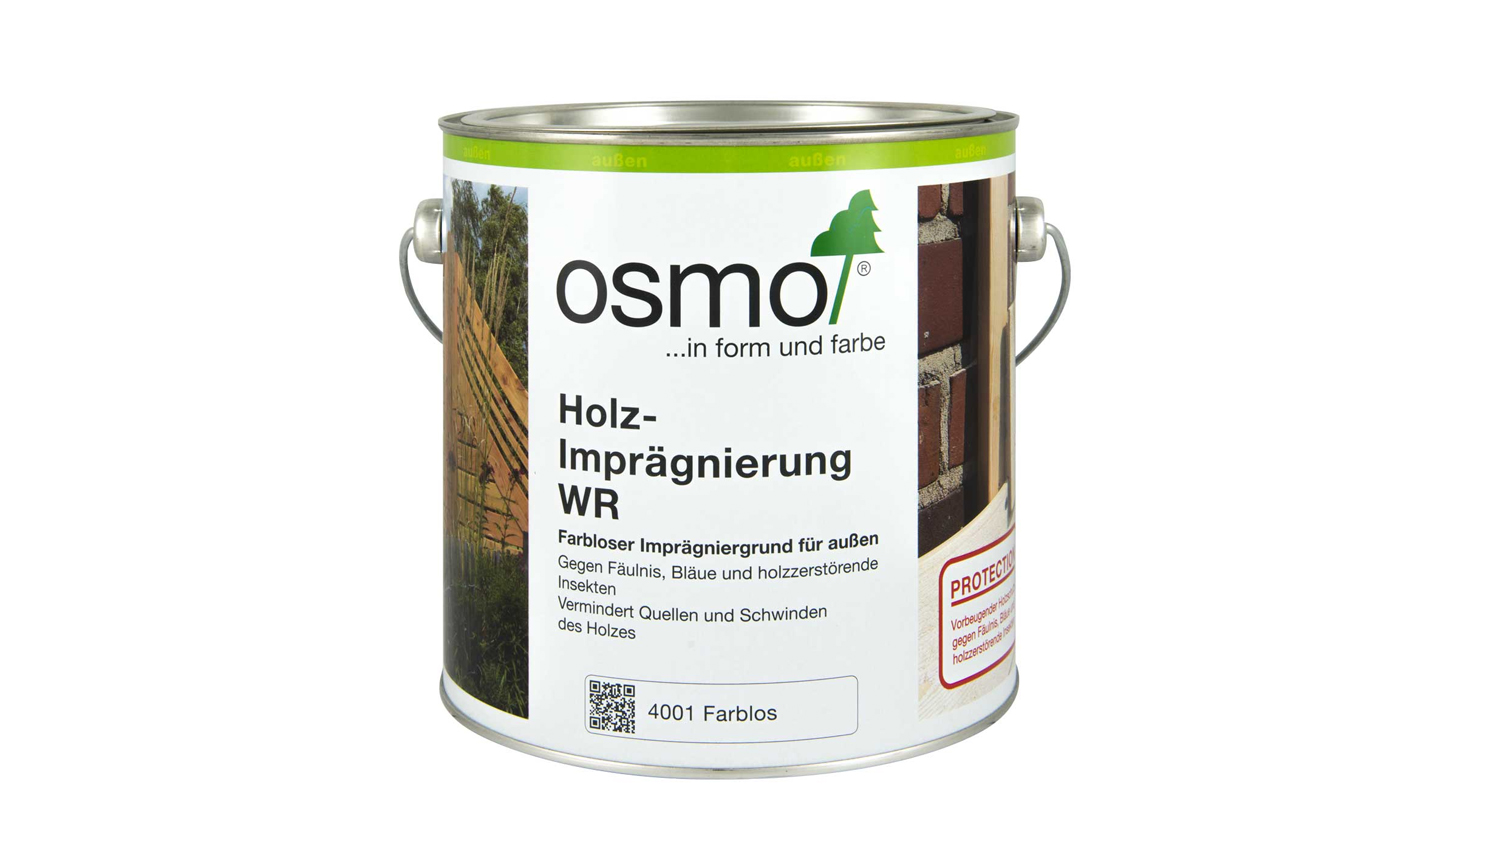 Osmo Holz-Imprägnierung WR farblos 5,0l